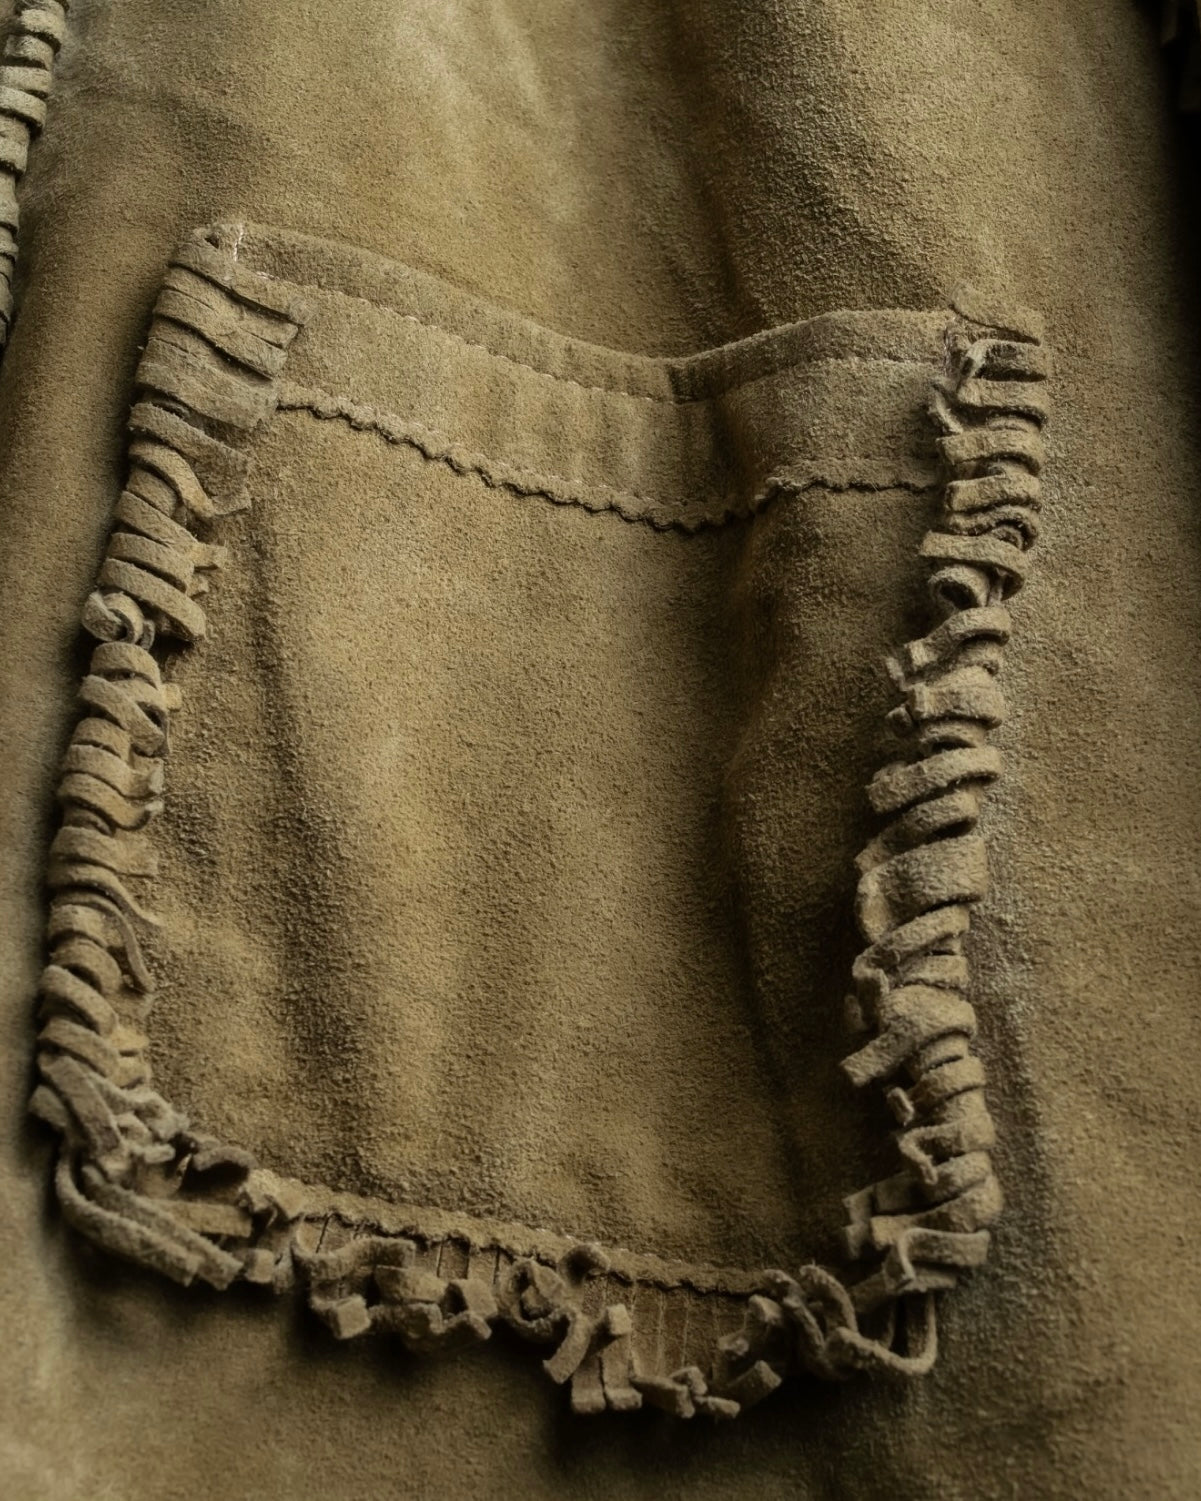 Vintage suede fringe jacket